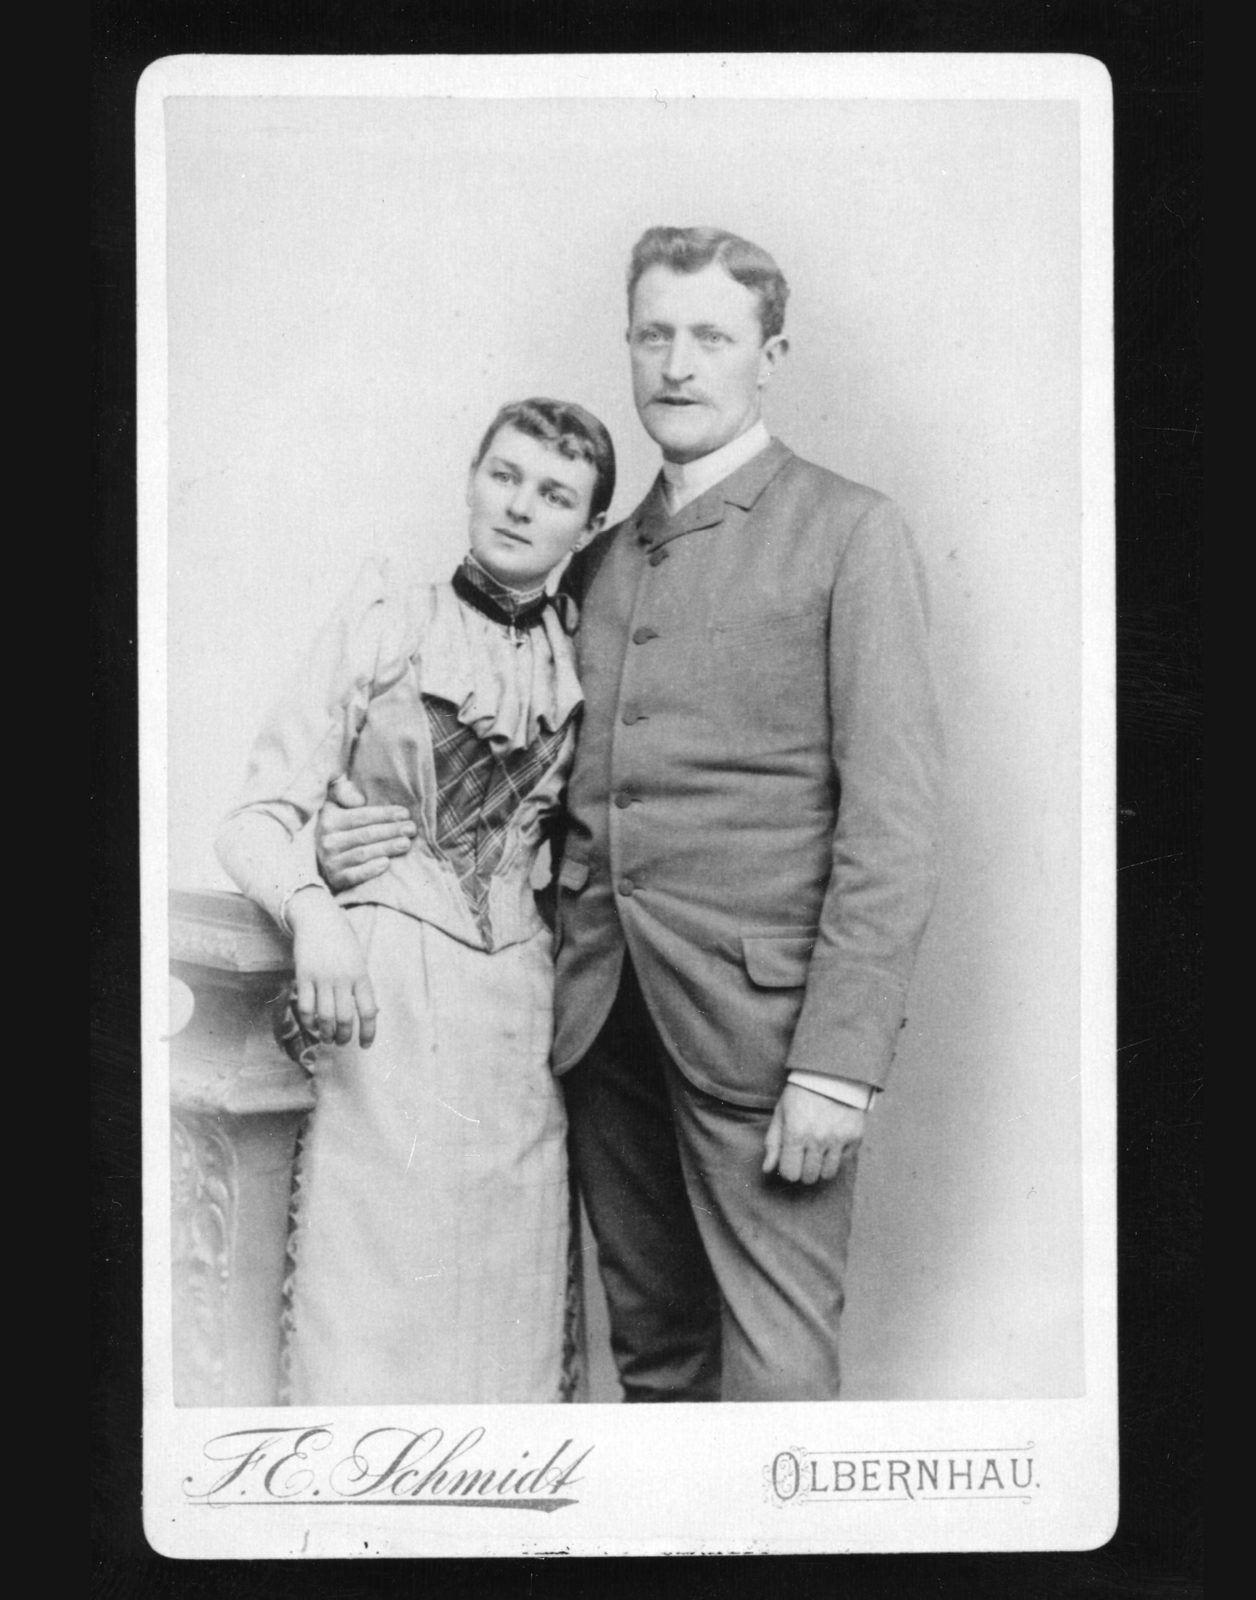 Atelierfoto, Ende 19. Jahrhundert, junges gut gekleidetes Paar, Ingvar Kamprads Großeltern väterlicherseits in Deutschland.